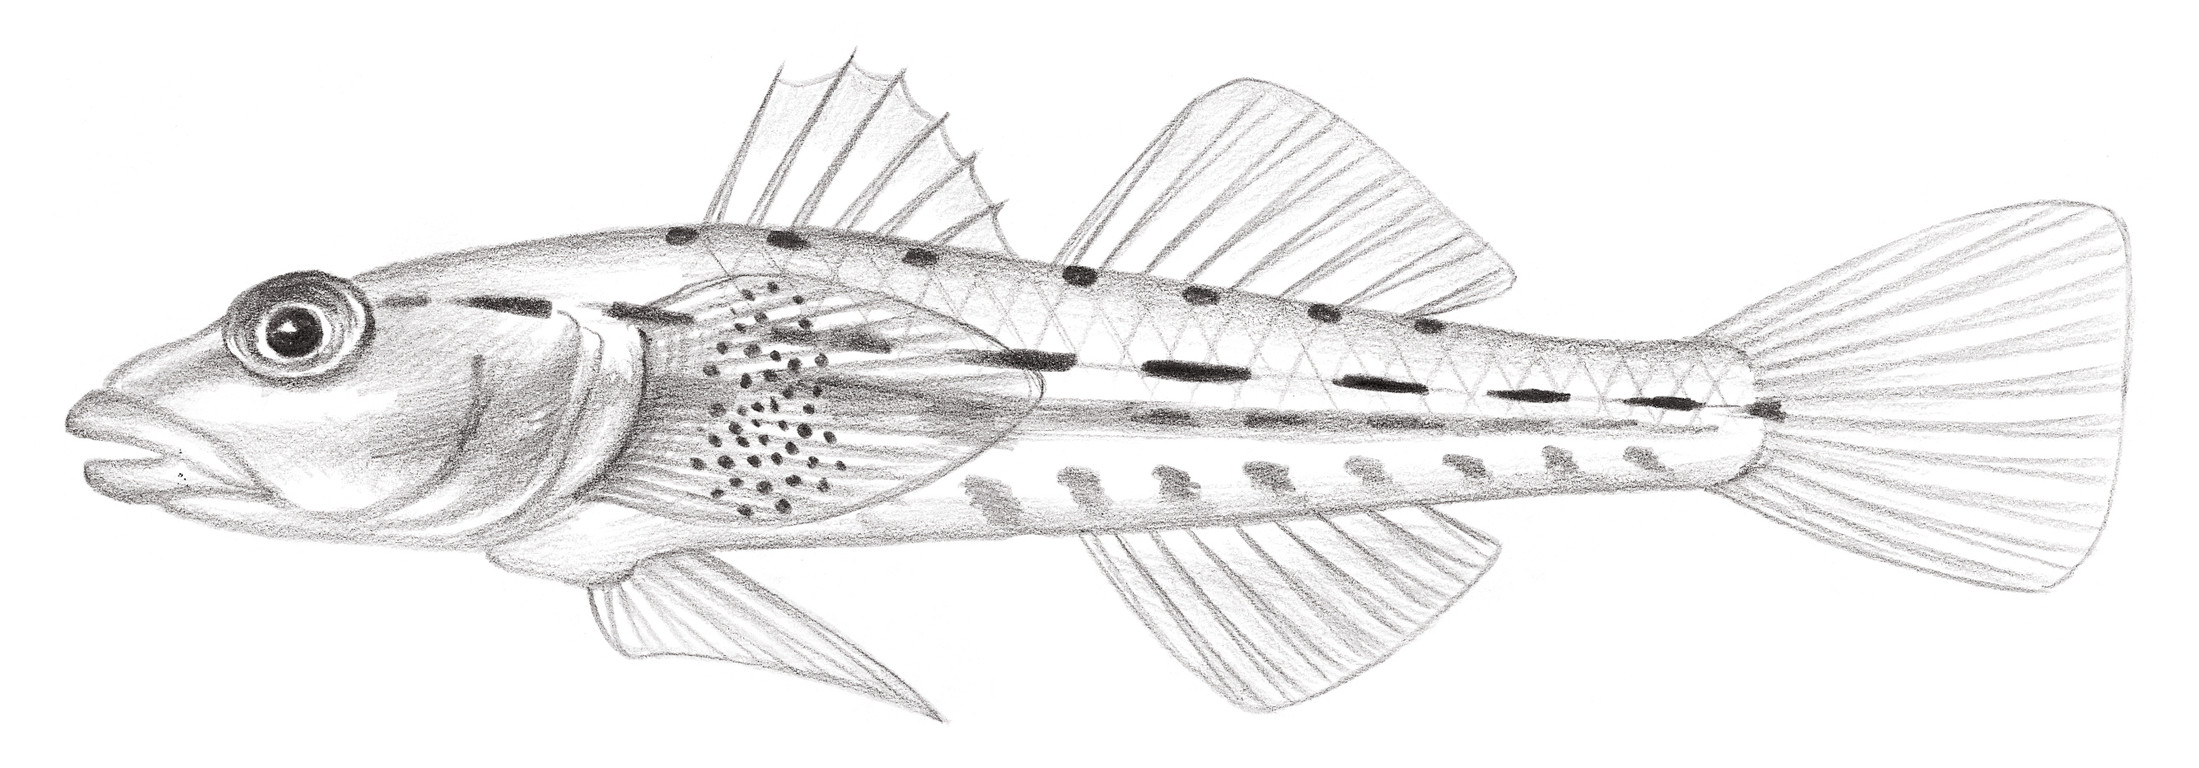 2179.	長體腹瓢鰕虎 Pleurosicya elongata Larson, 1990